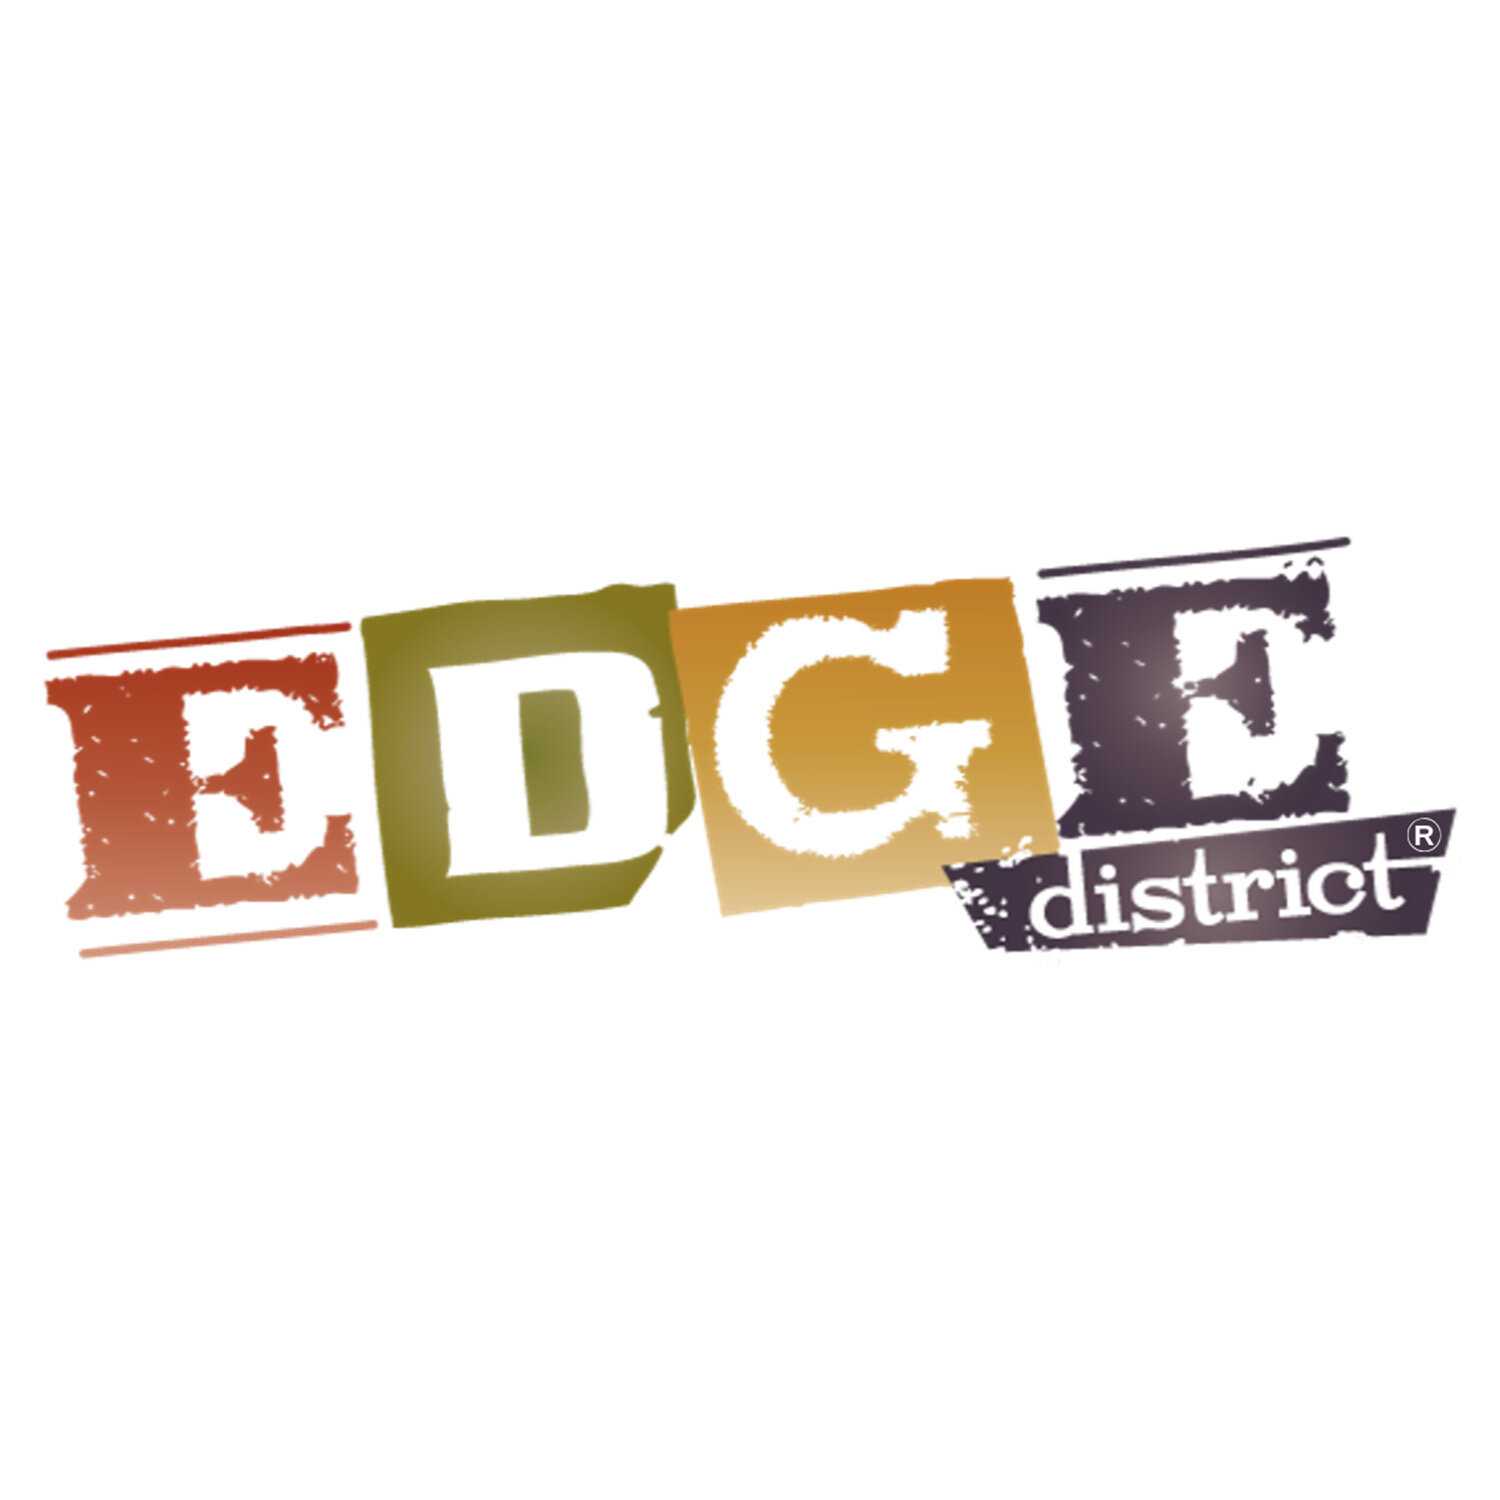 EDGE DISTRICT BUSINESS ASSOCIATION